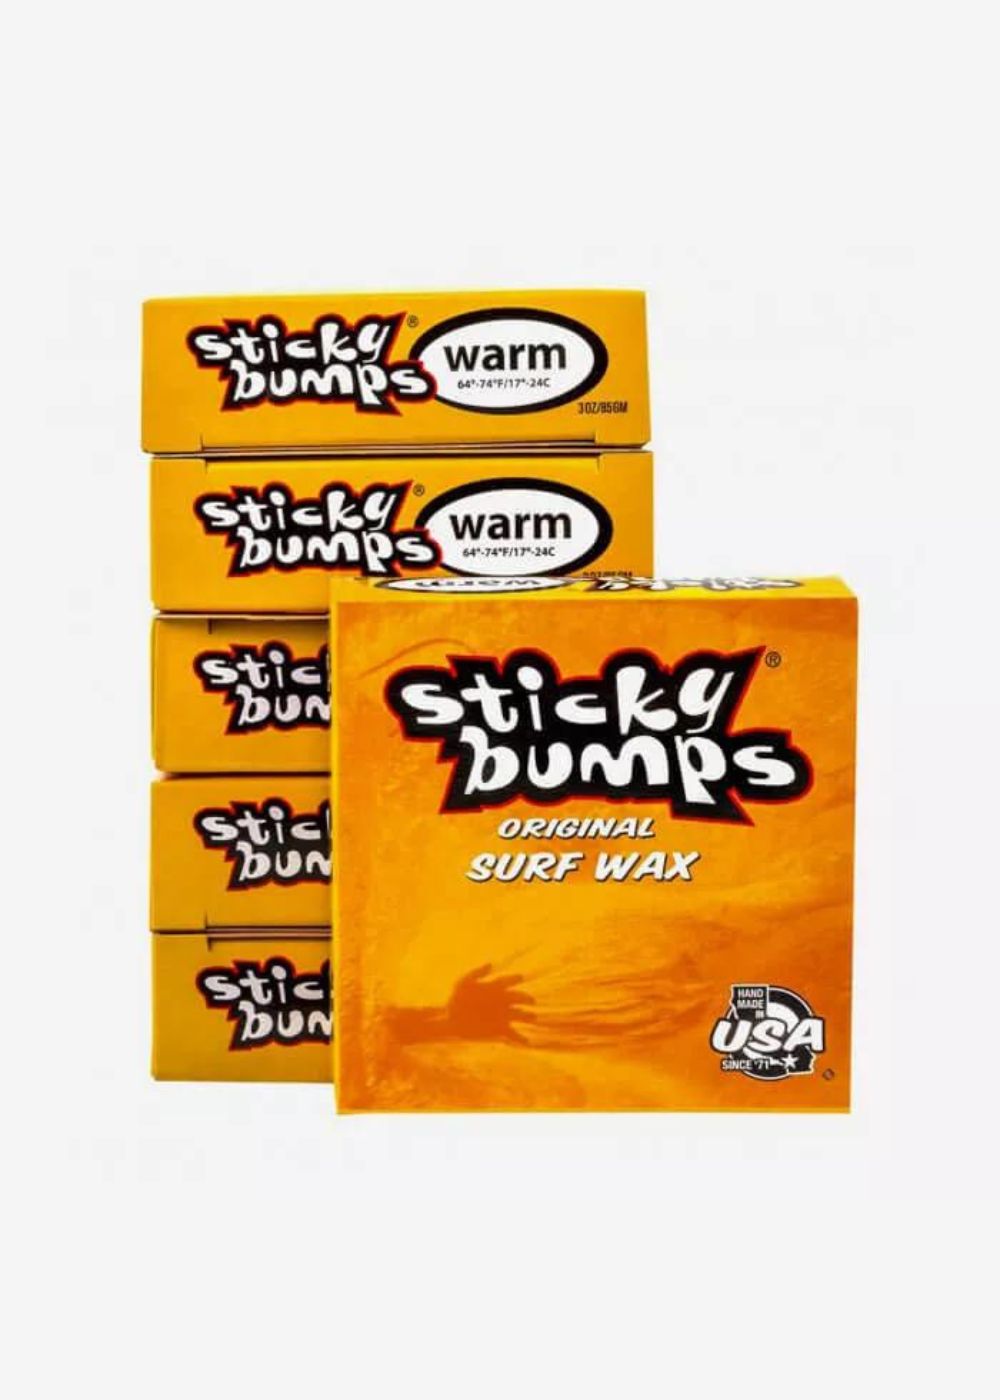 שעוות STICKY BUMPS - warm original blend -  שעוות warm